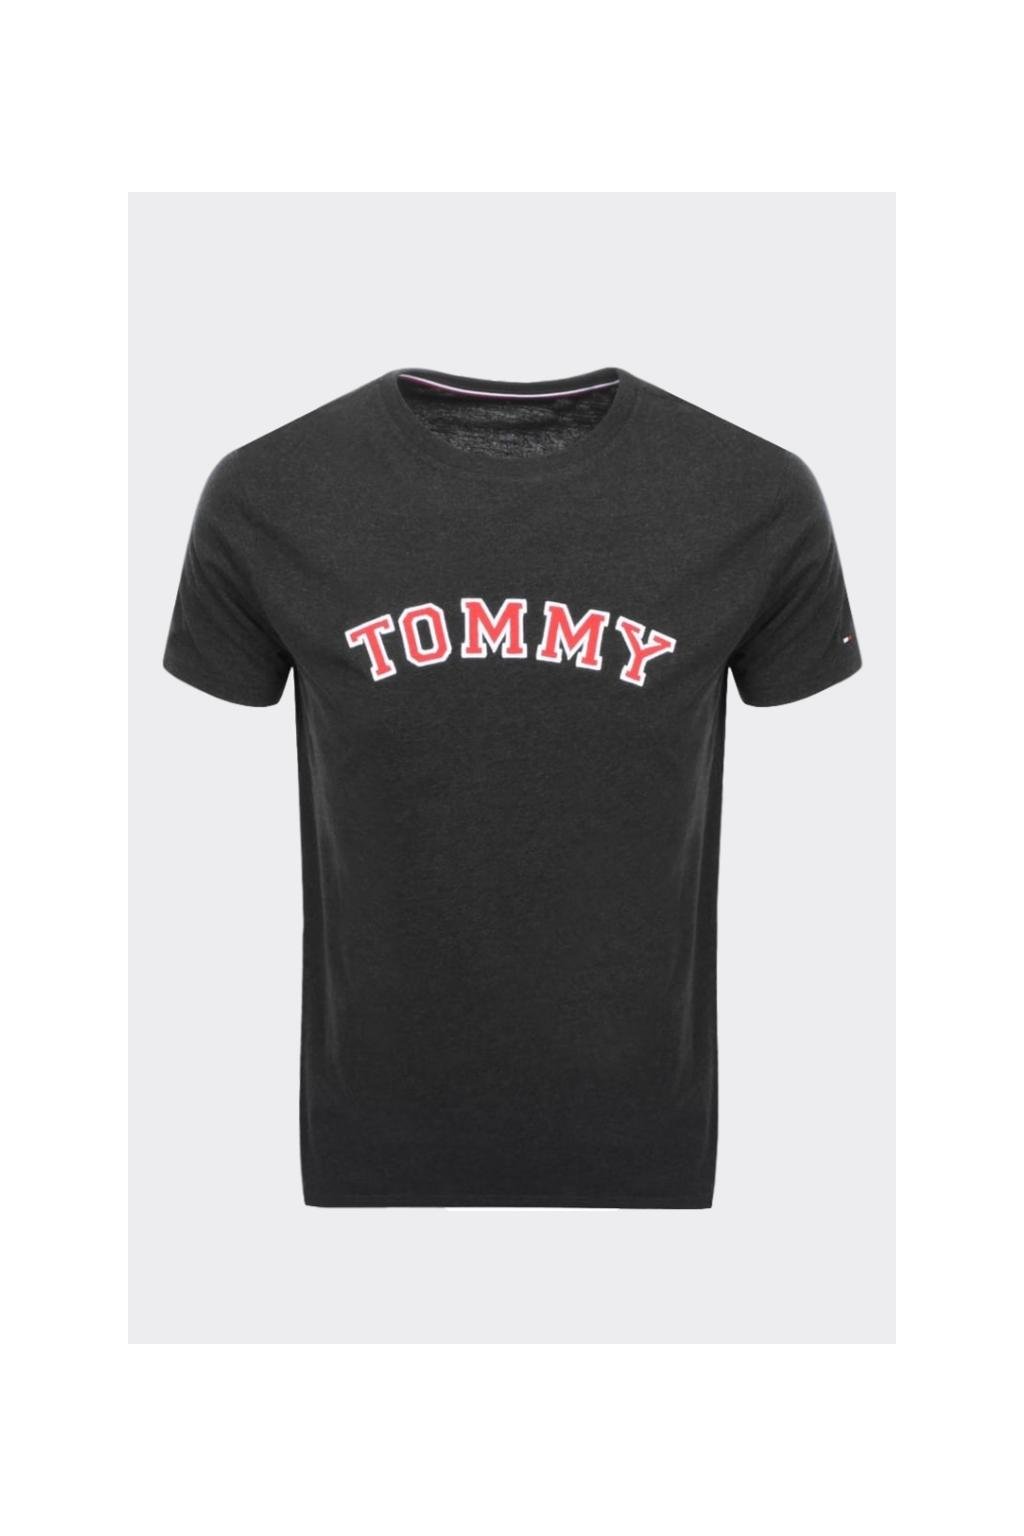 Tommy Hilfiger Tričko pánské - tmavě šedé